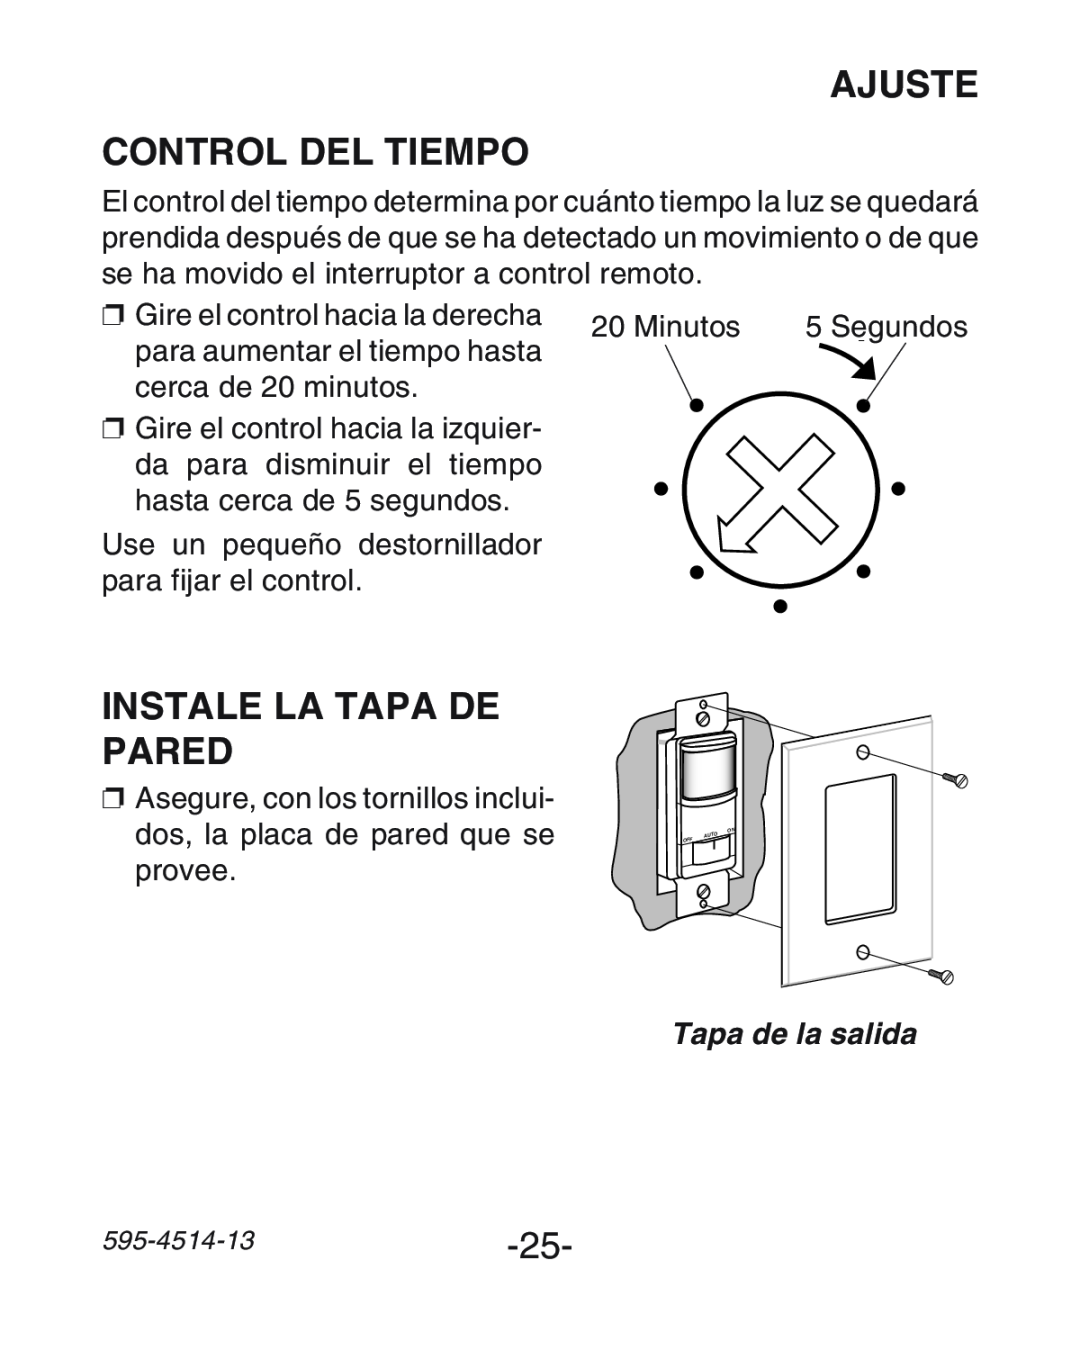 Heath Zenith SL-6107 manual Ajuste Control Del Tiempo, Instale La Tapa De Pared, Tapa de la salida 